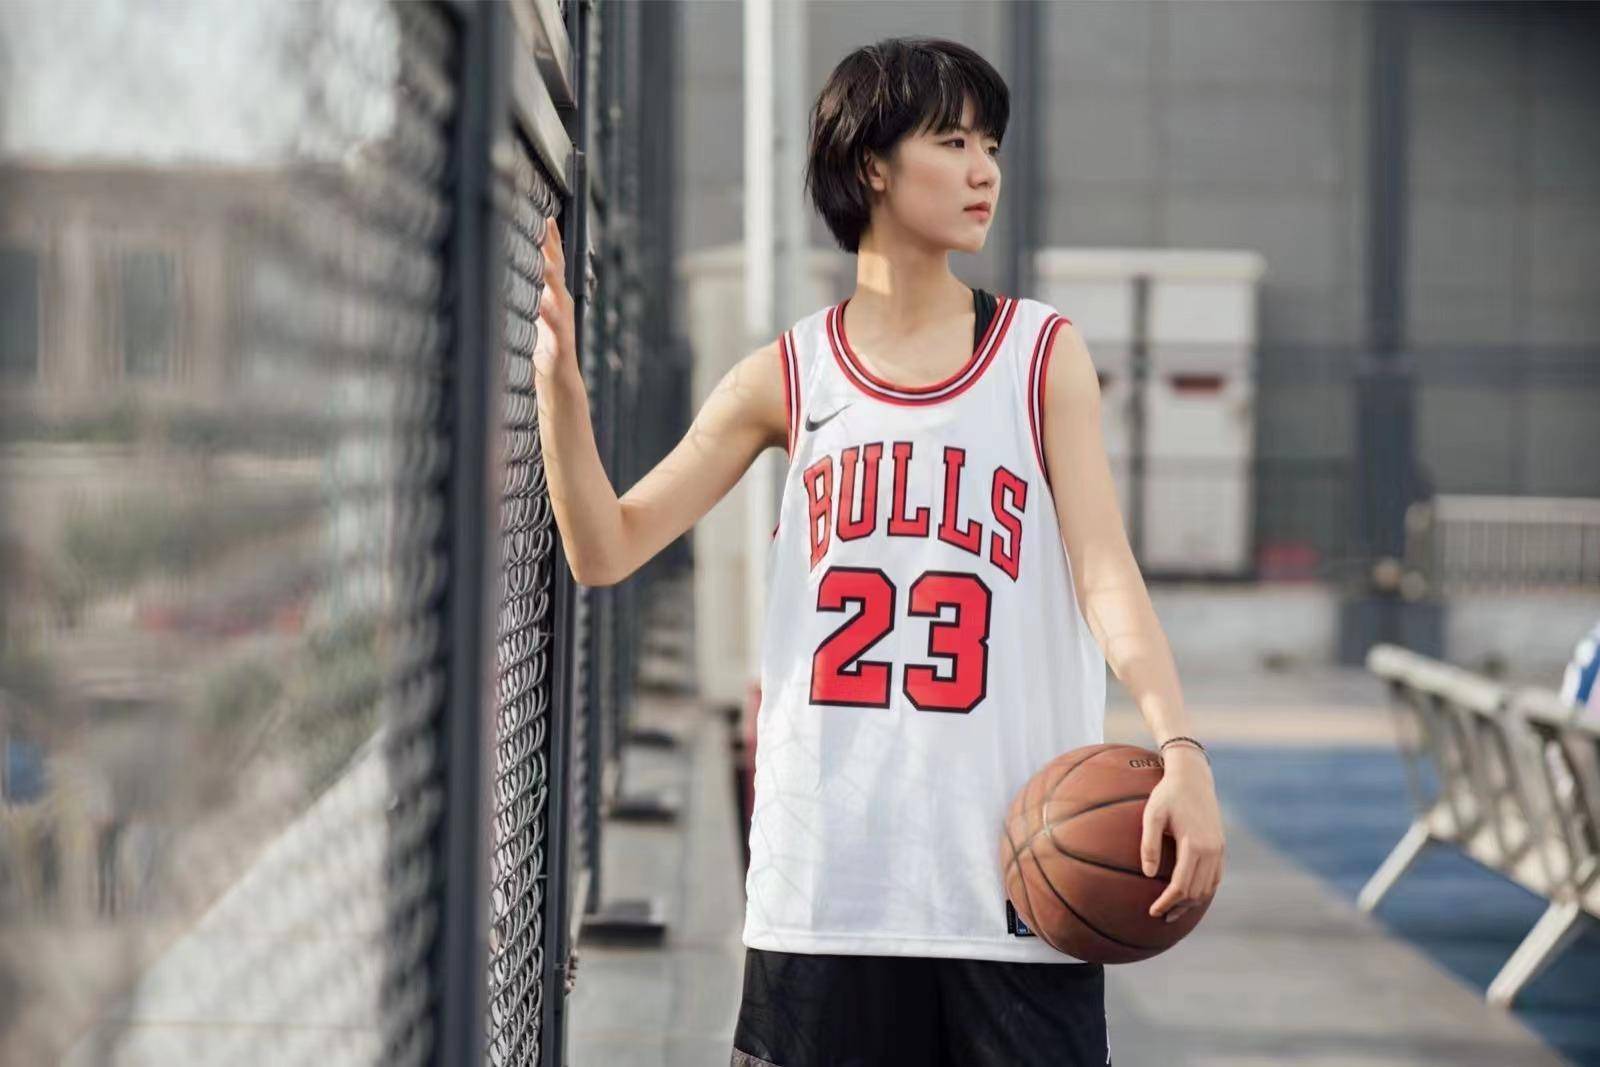 周彤:爱打篮球的女孩都好看